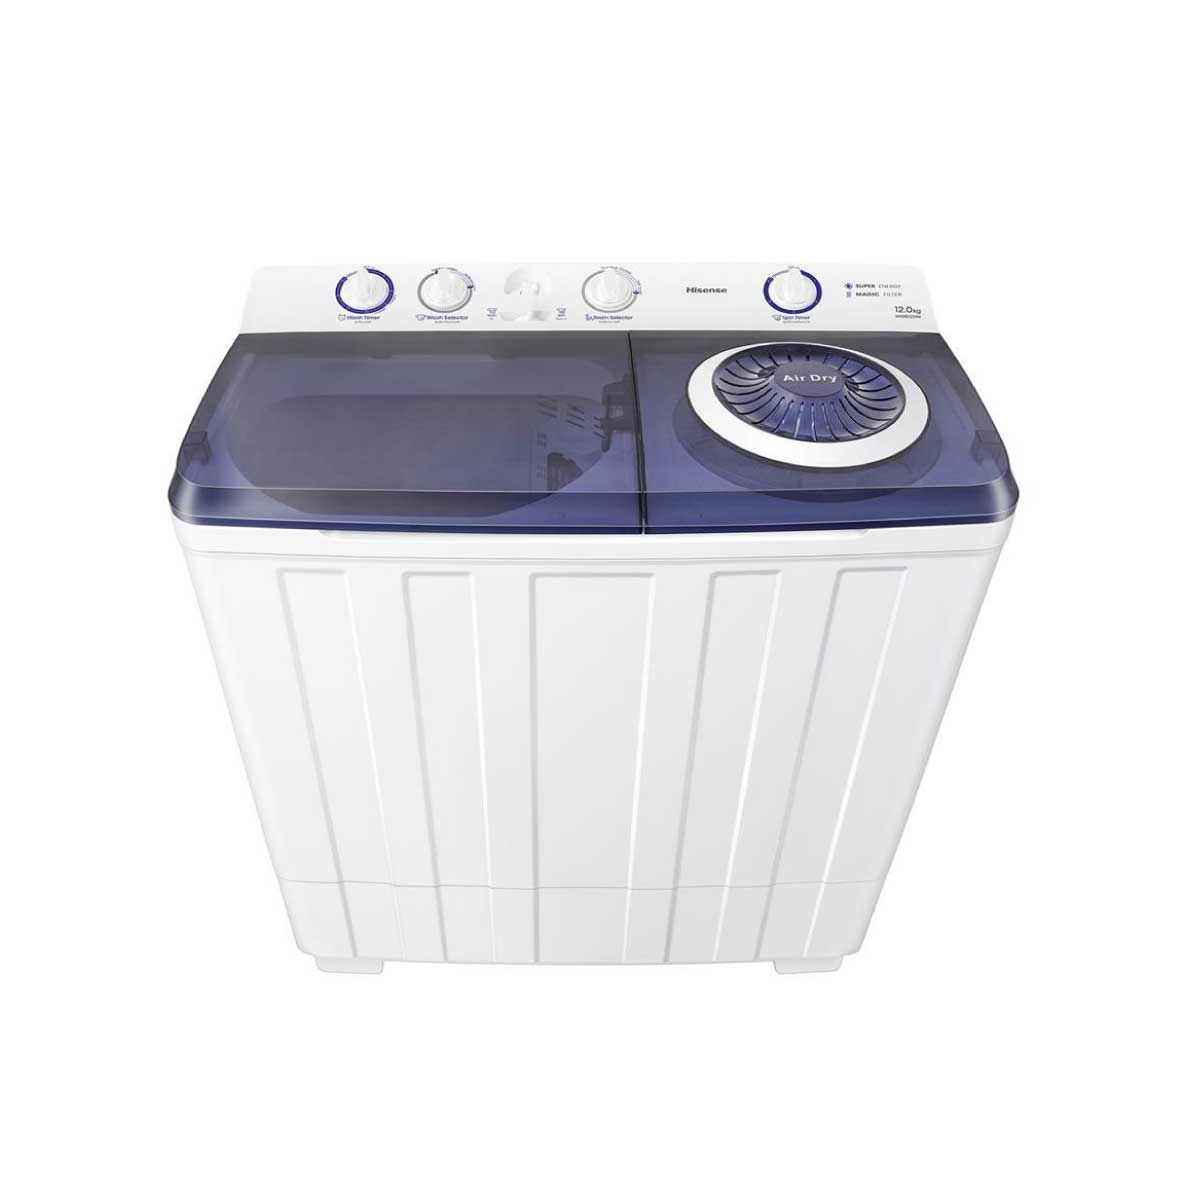 HISENSE เครื่องซักผ้า 2ถัง 12Kg. สีขาว รุ่น WSRB1201W